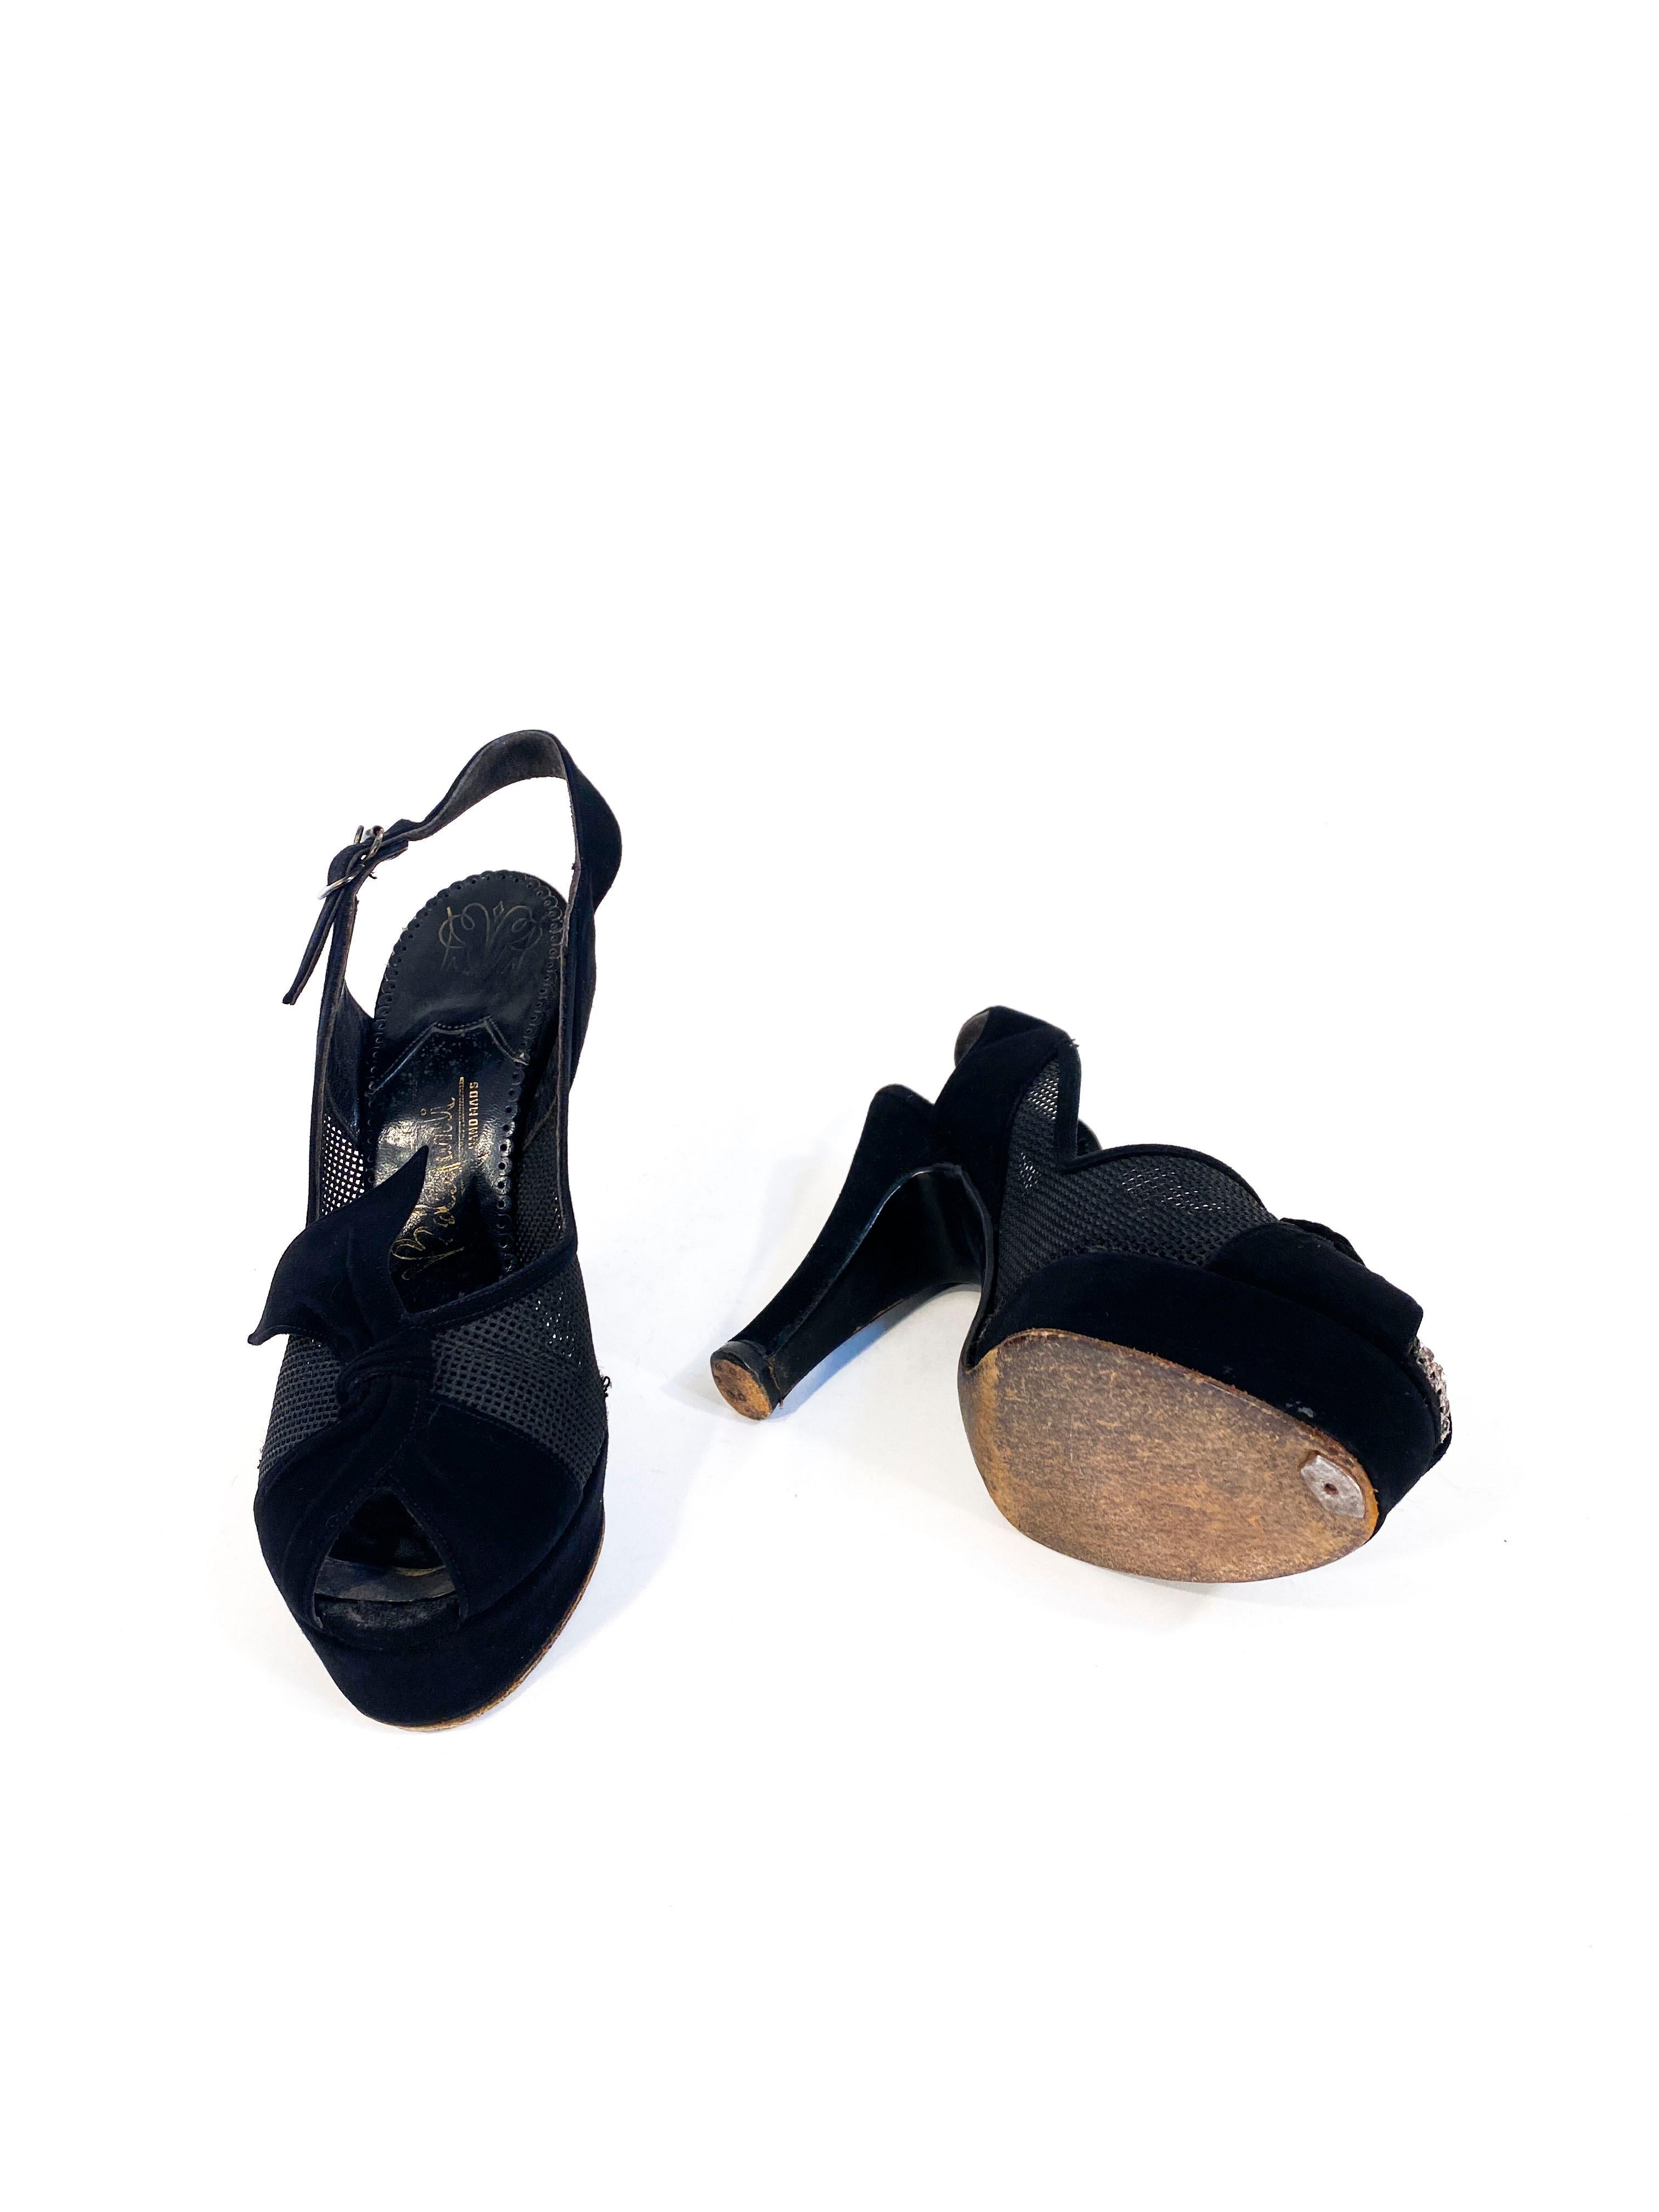 1940s Black Suede and Mesh Platform Heels For Sale 1